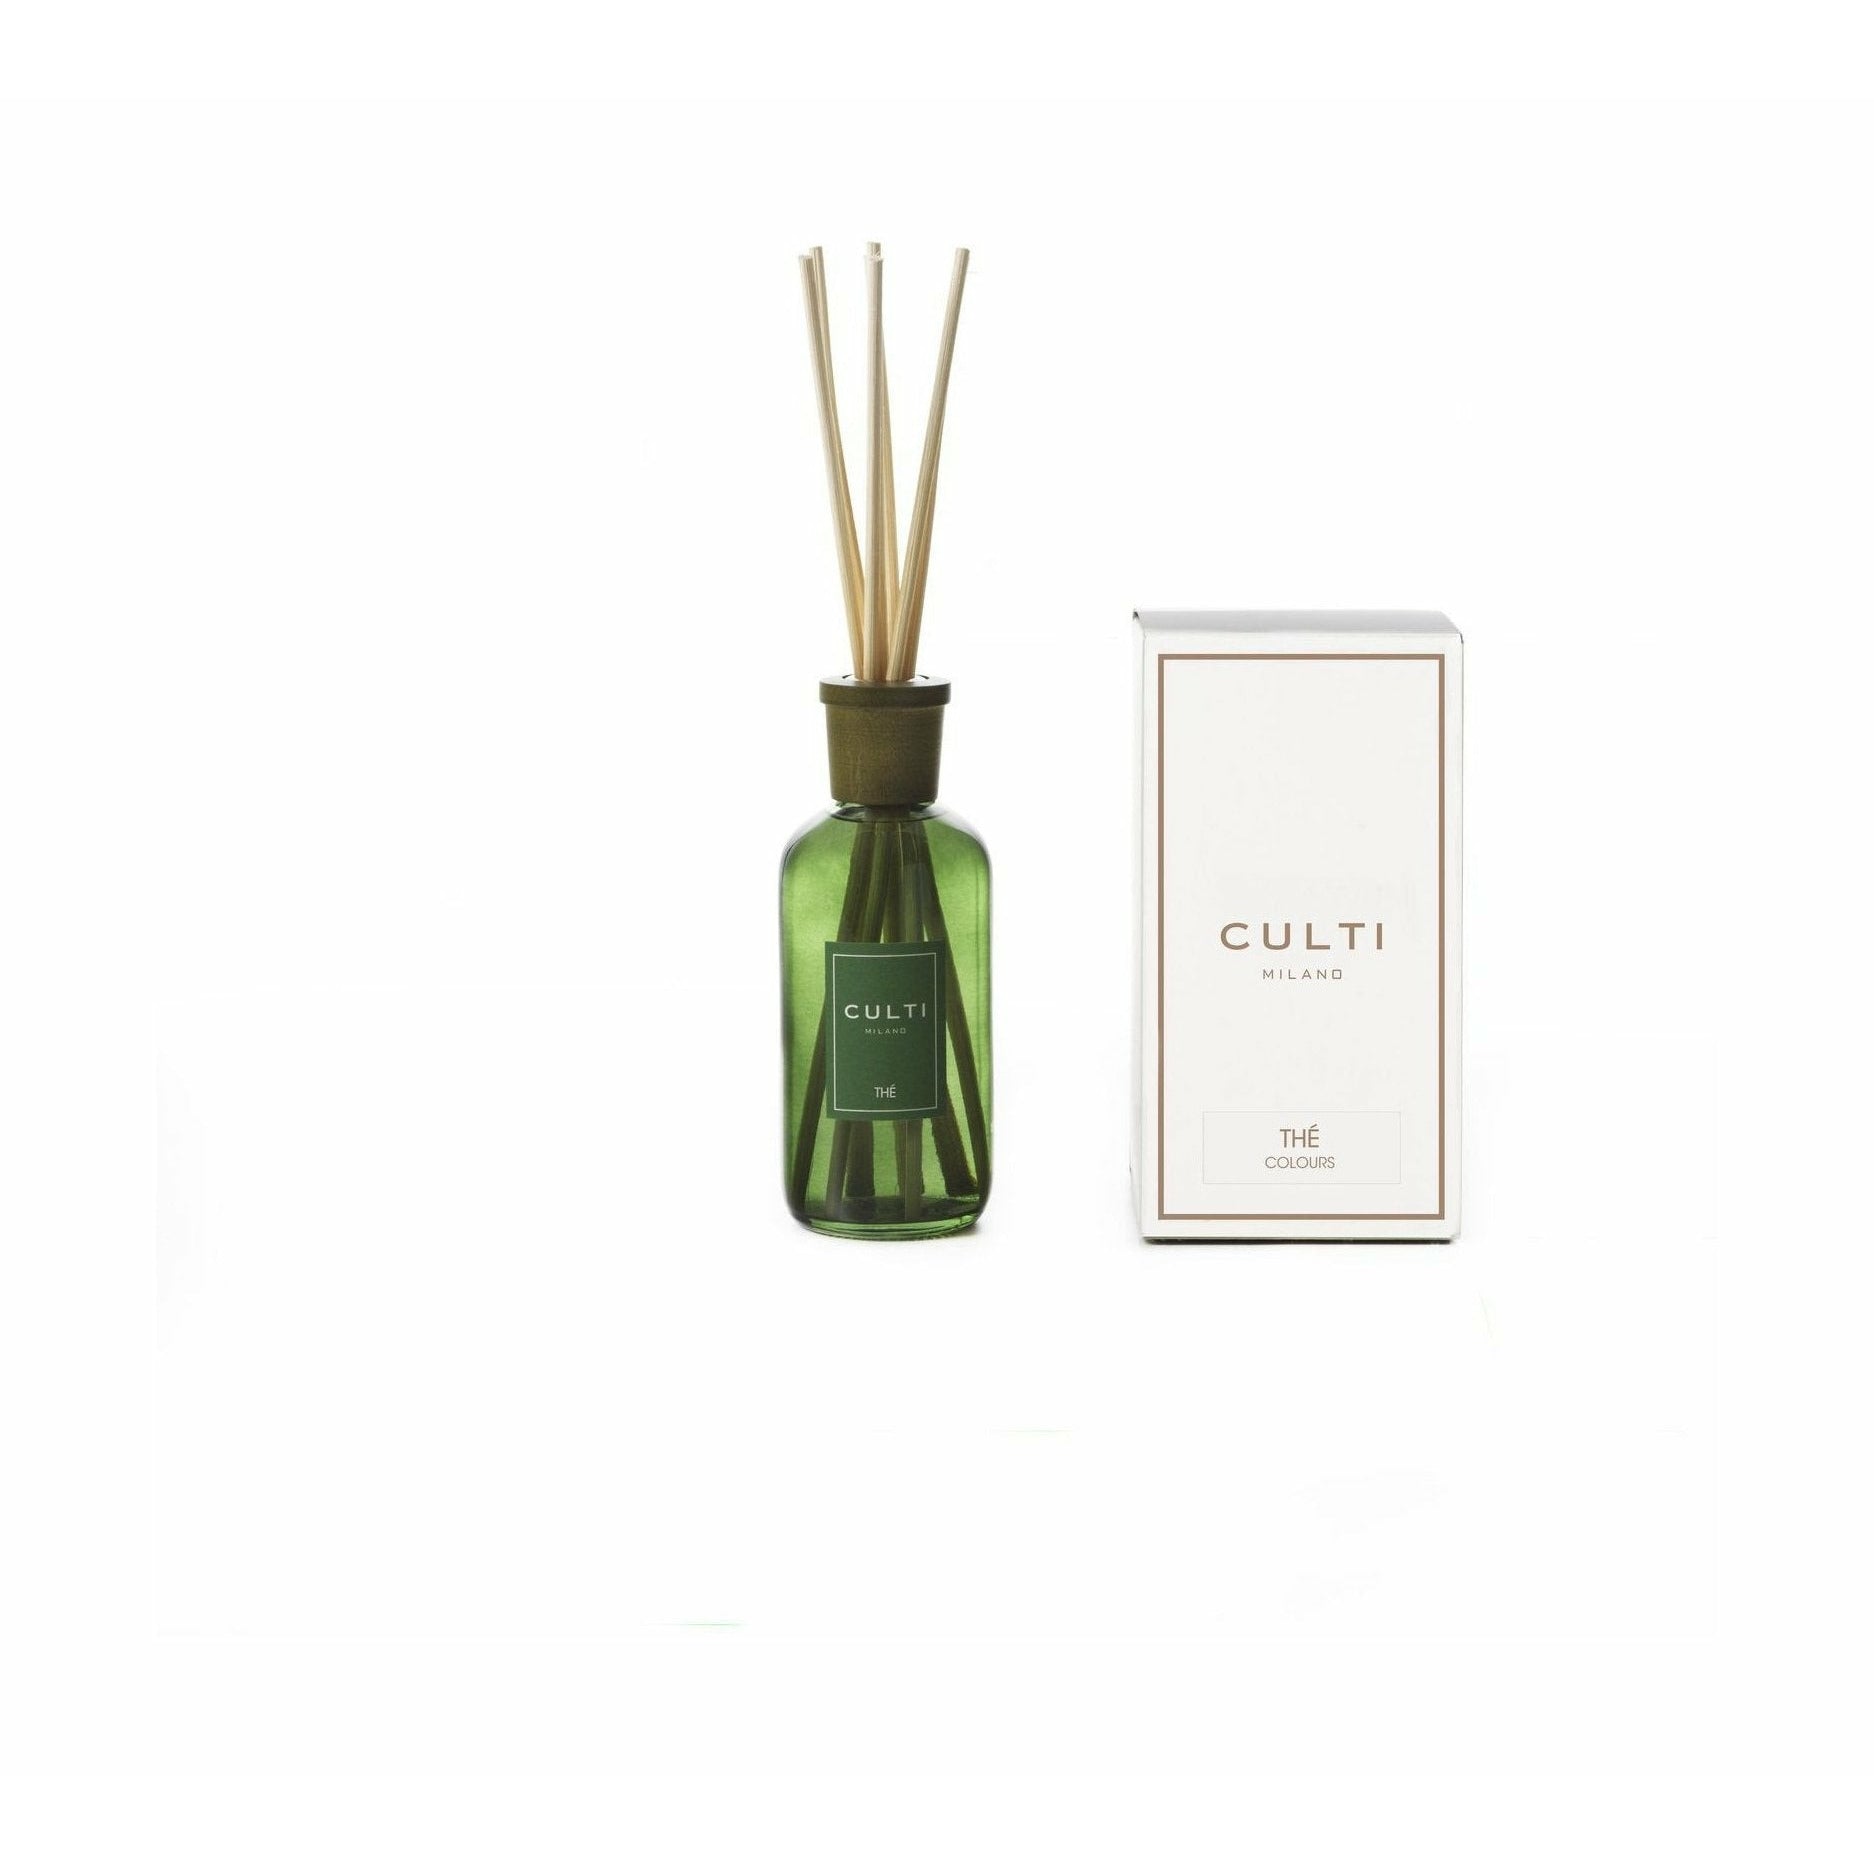 Culti Milano Colours Fragrance Diffuser The, 250 Ml